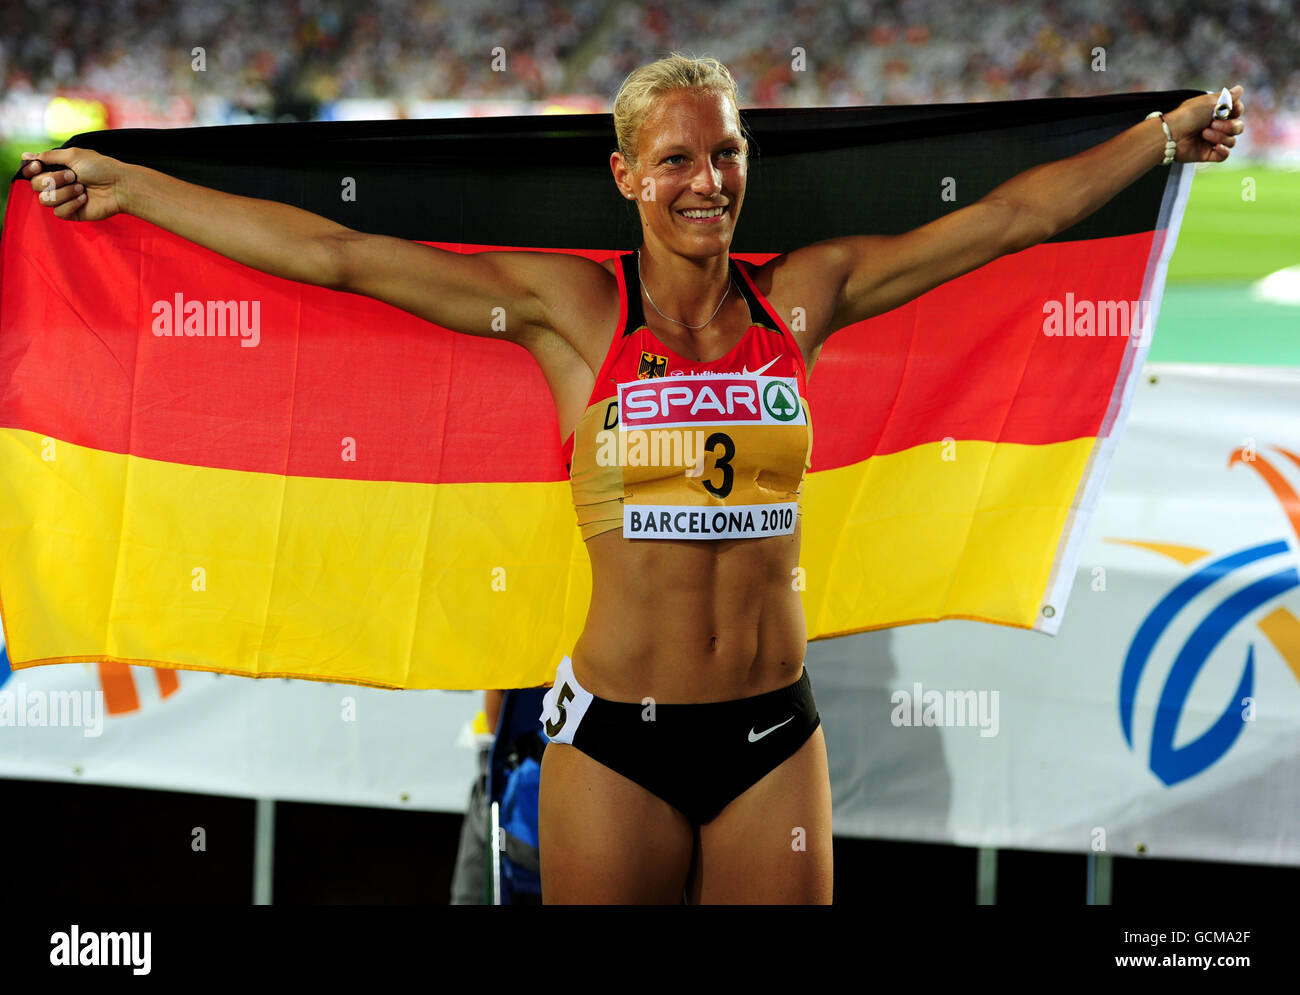 Atletismo - Campeonato Europeo de IAAF 2010 - Día Cinco - Estadio Olímpico. Jennifer Oeser de Alemania celebra después de ganar la medalla de bronce durante el heptathlon femenino Foto de stock